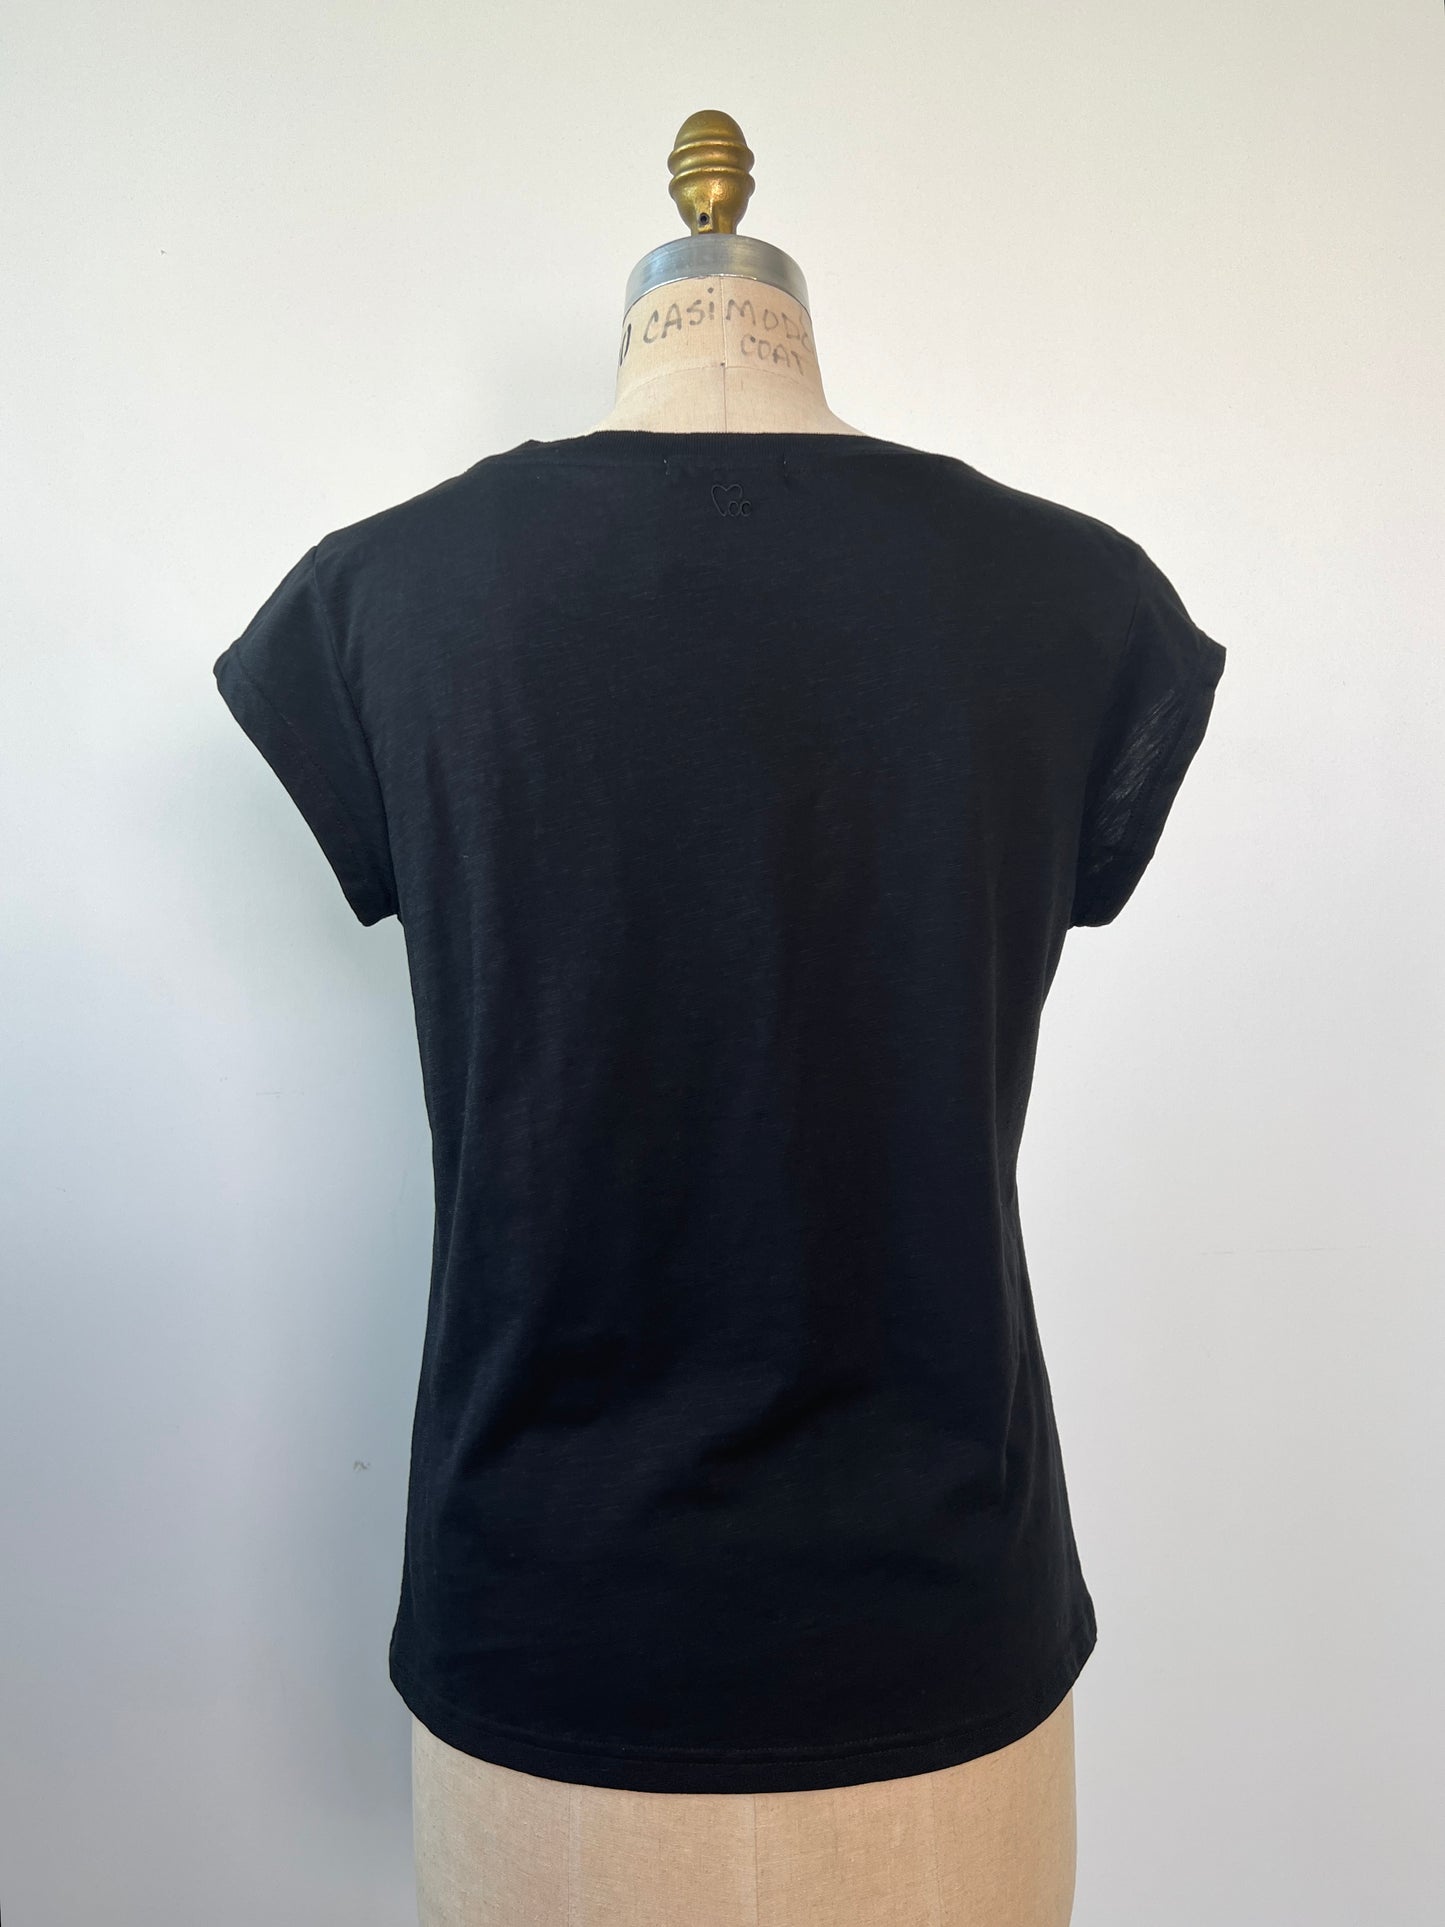 T-shirt en tissage tramé noir (S)